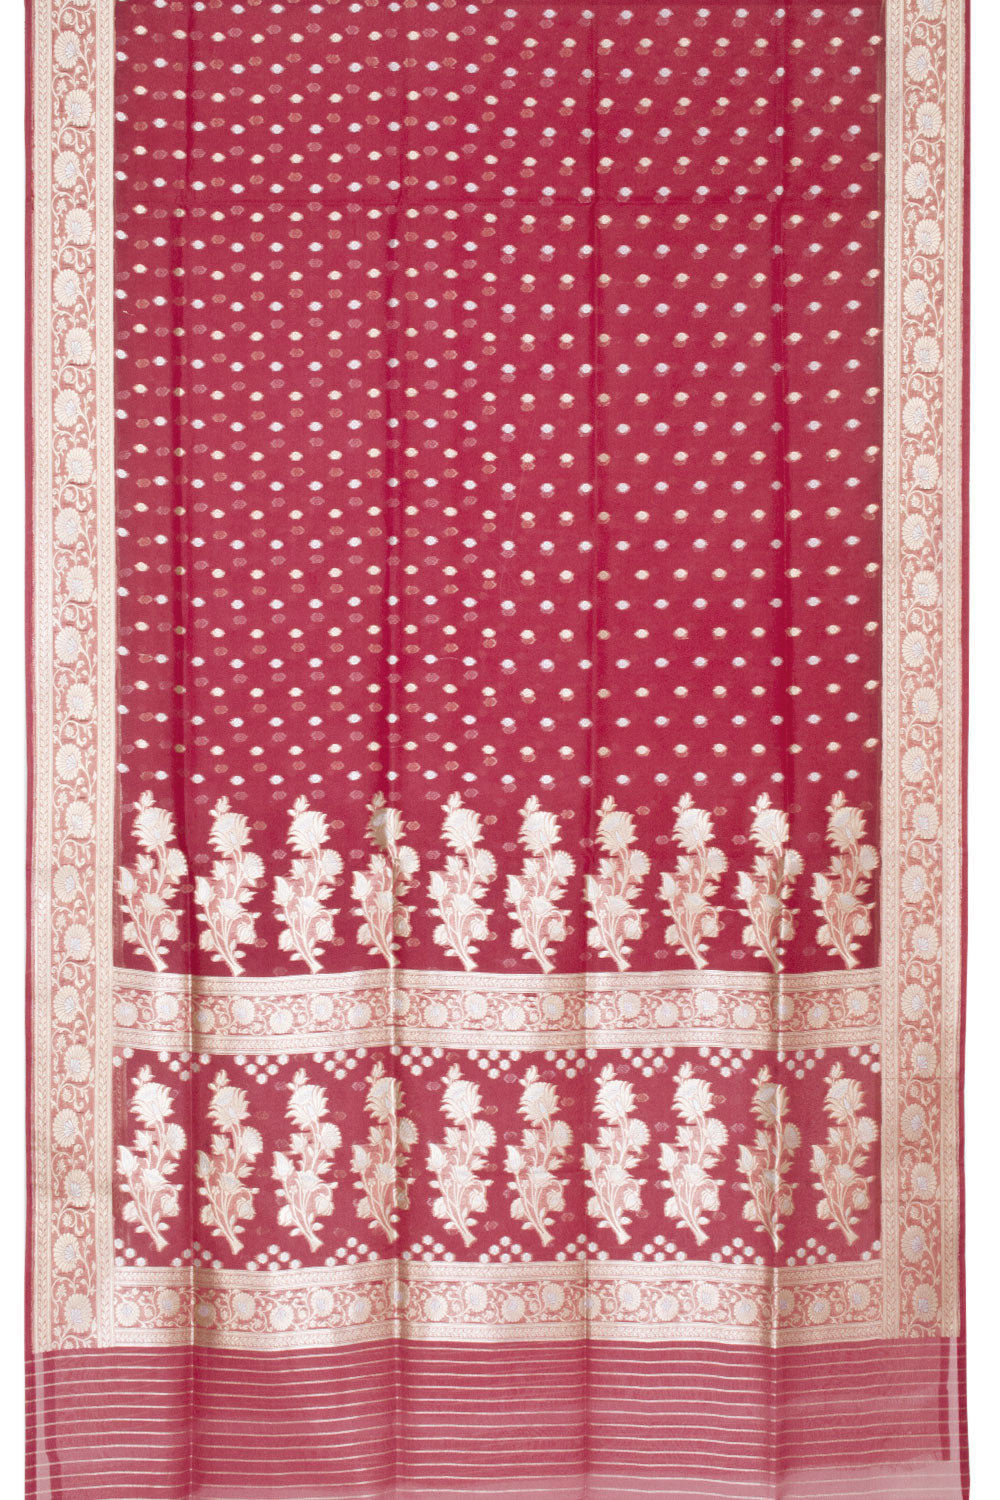 Red Handloom Banarasi Kora Silk Saree